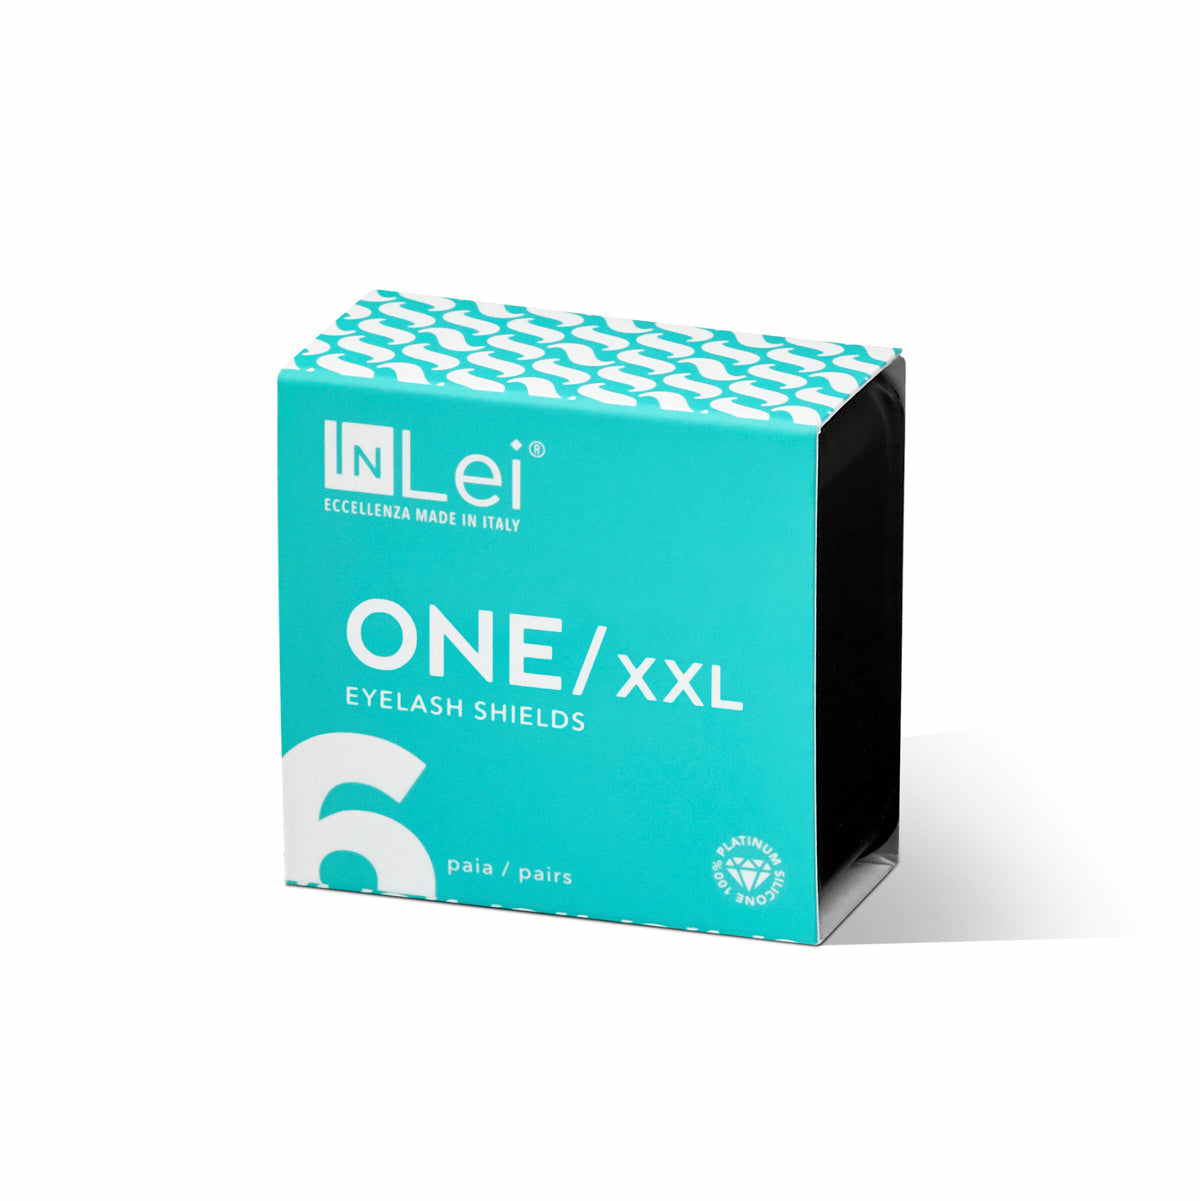 InLei® "ONE" - Silicone Shields Size XXL